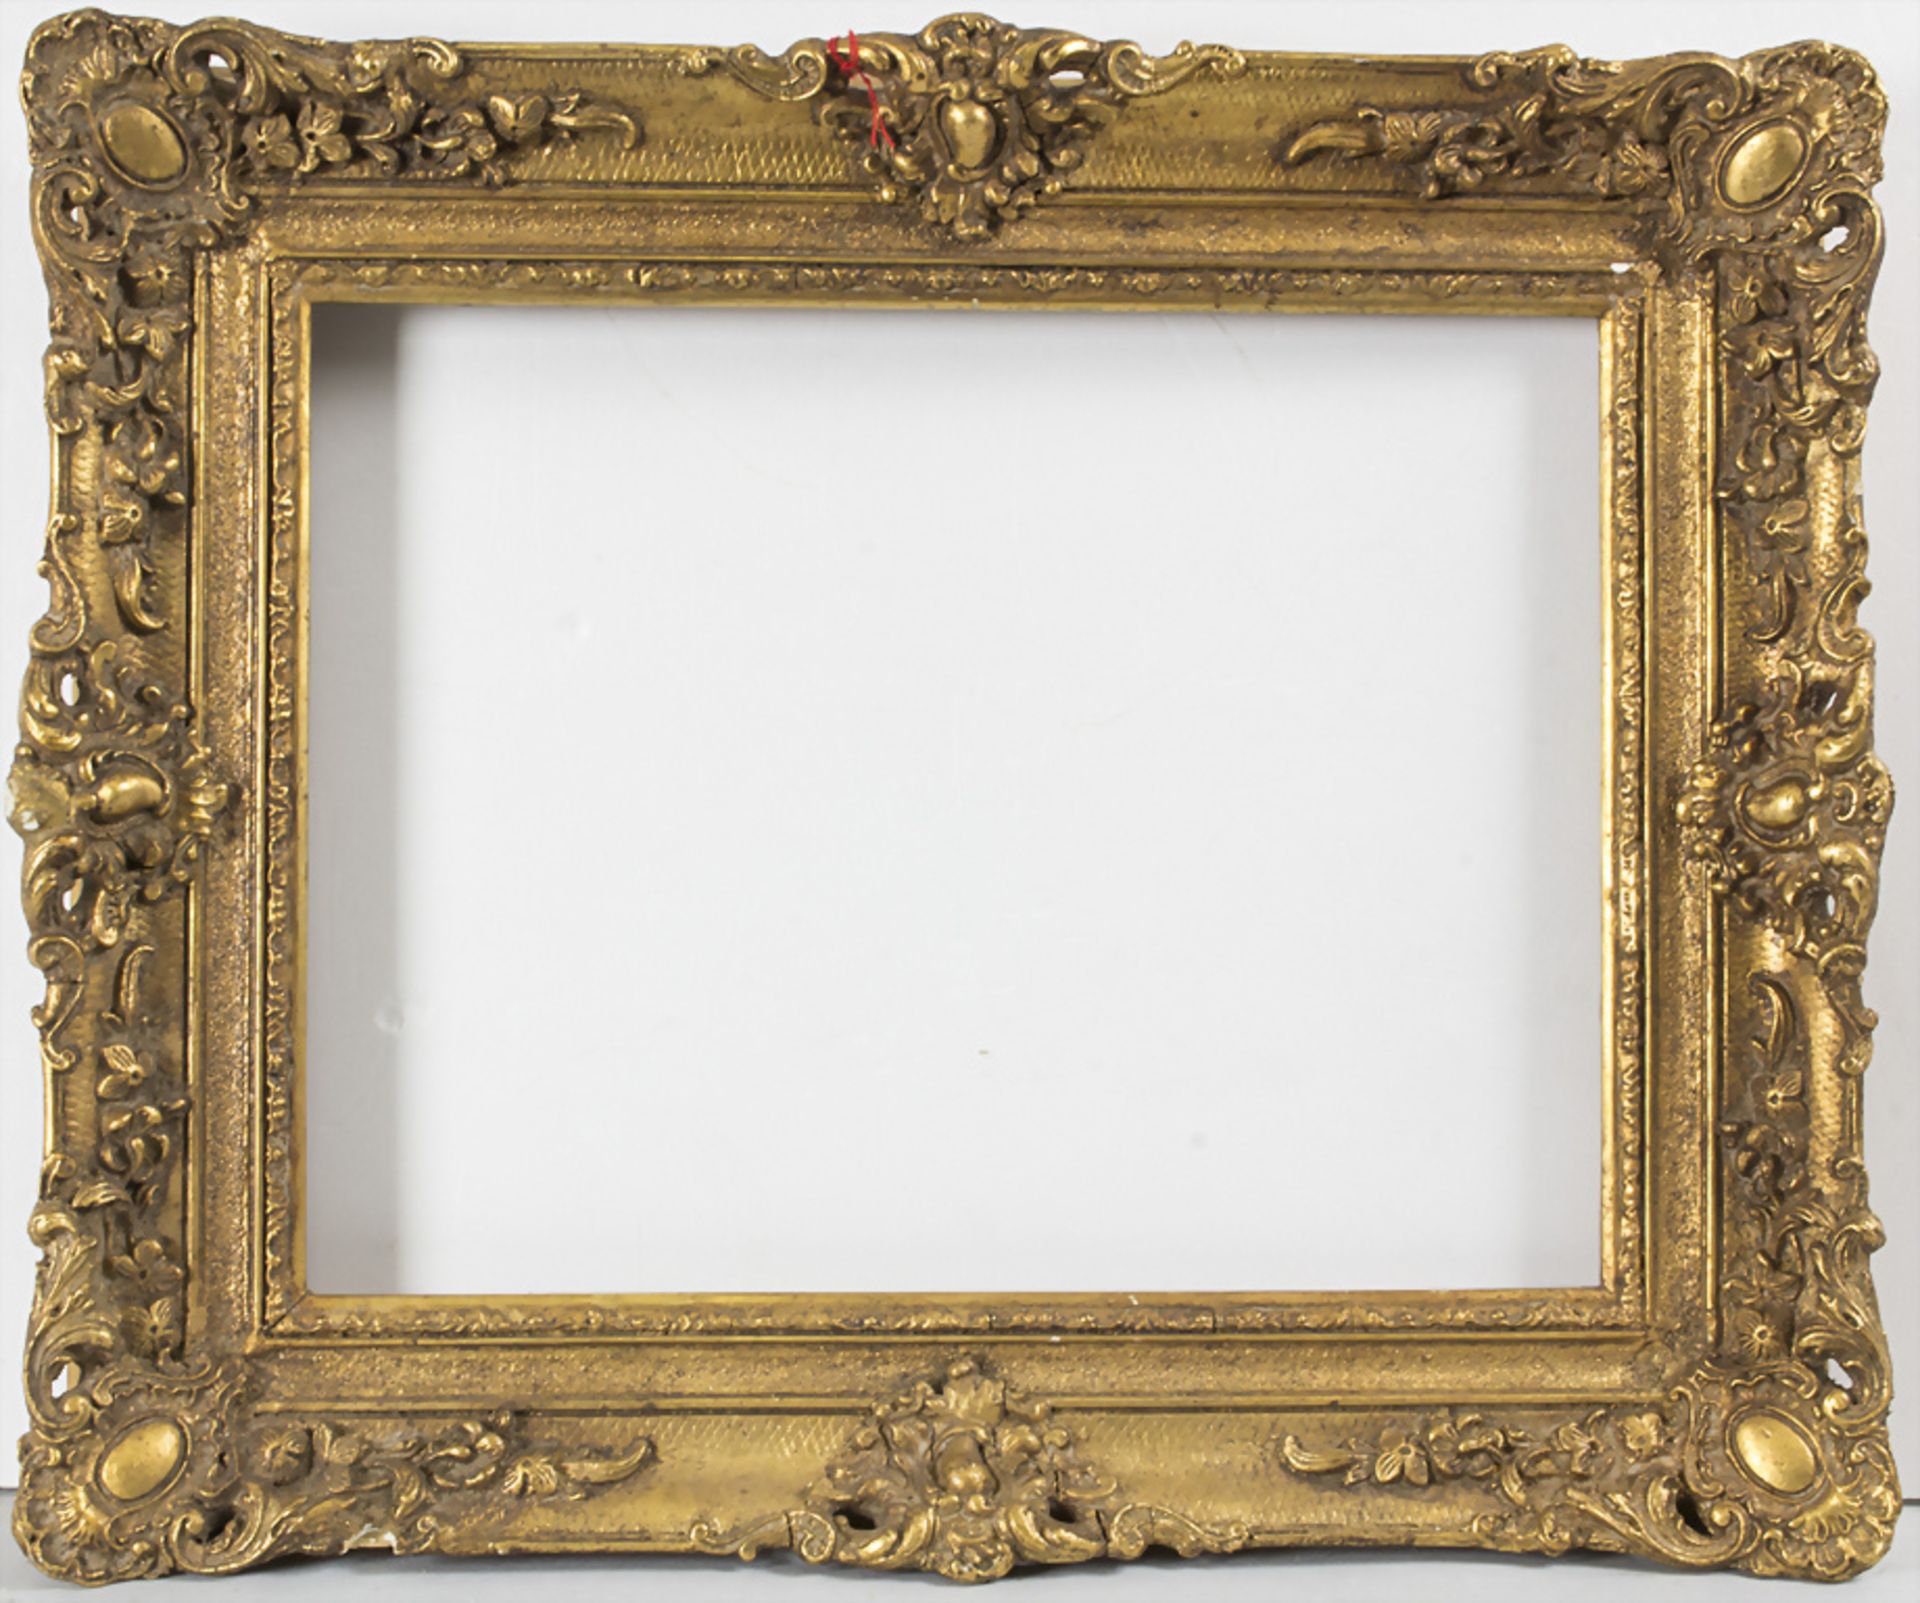 Ein Rokoko Rahmen / A Rococo frame